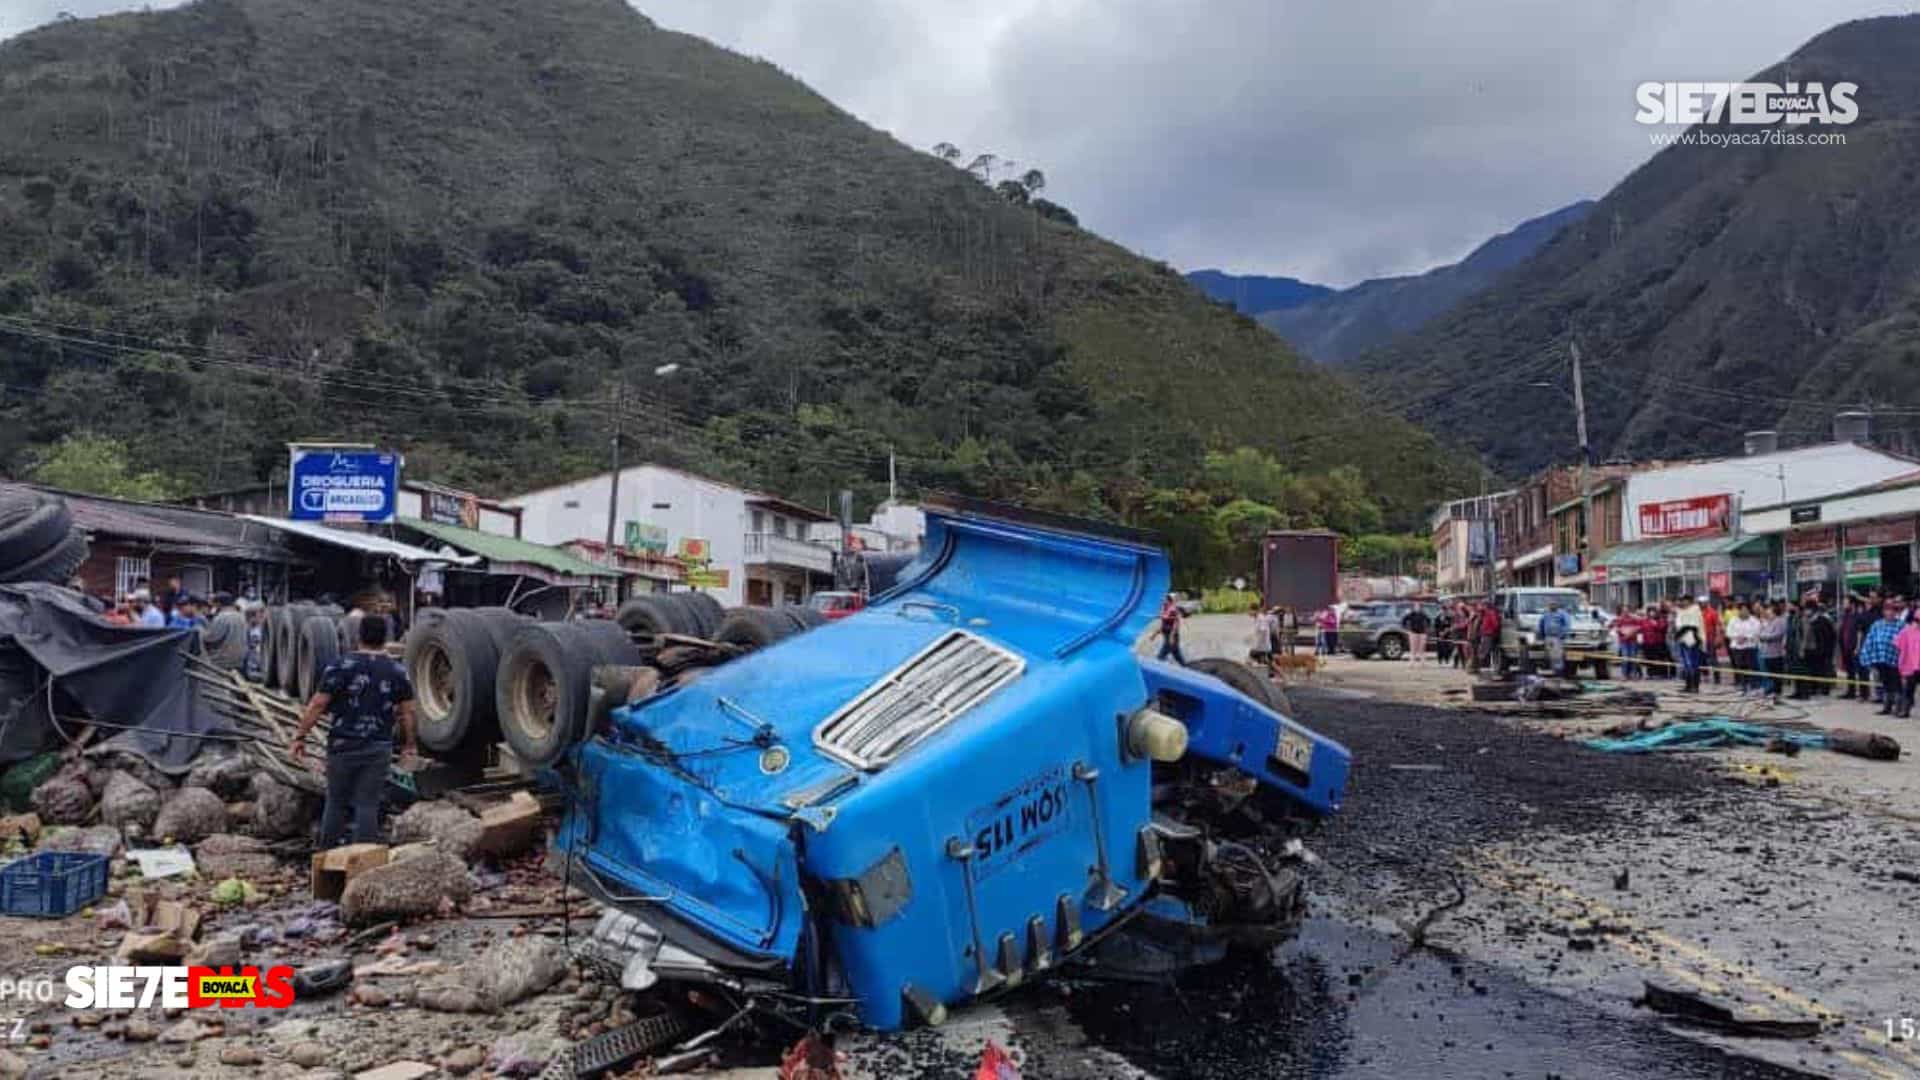 El impacto fue tan grande que la tractomula y el camión quedaron prácticamente destruidos a tal punto que la cabina del tractocamión quedó en pedazos. Fotos: Rafael López/Boyacá Sie7e Días.